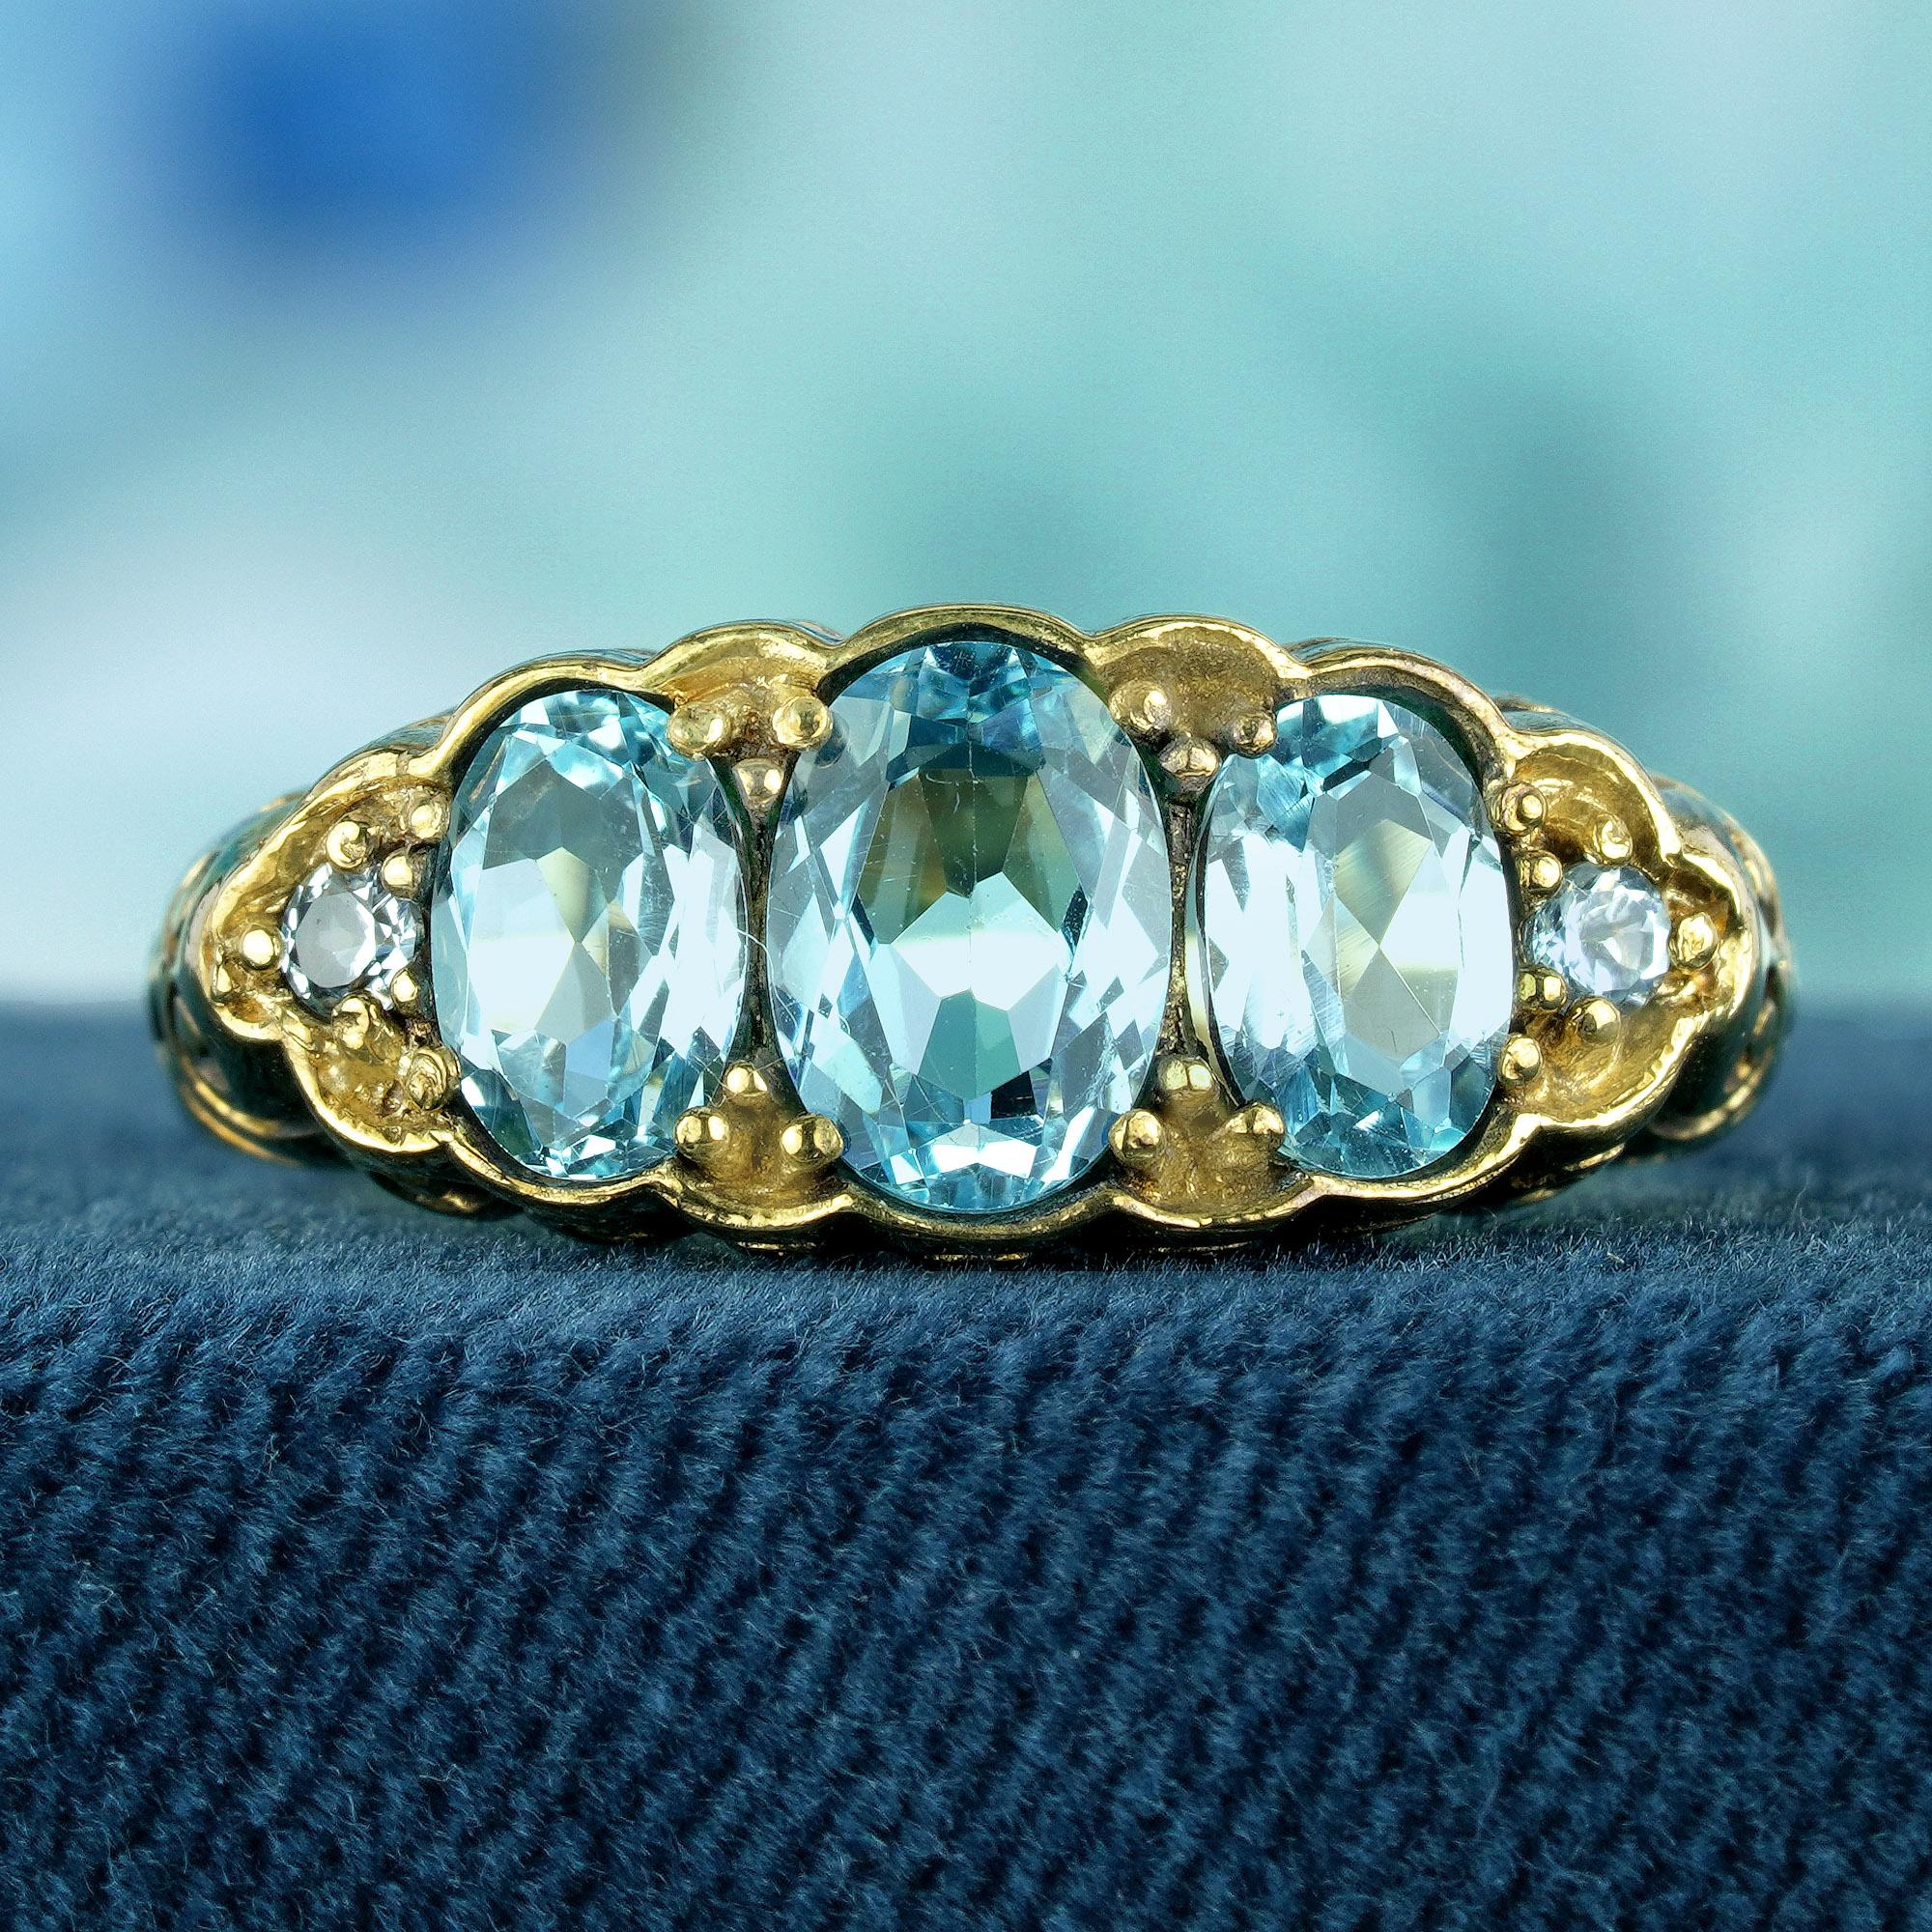 Zeitlose Eleganz mit unserem Topas-Dreisteinring im Vintage-Stil aus Gold. Dieser Ring, der mit drei bezaubernden blauen Topas-Steinen verziert ist, strahlt Eleganz und Charme aus. Das vom Vintage-Stil inspirierte Design verleiht jedem Ensemble